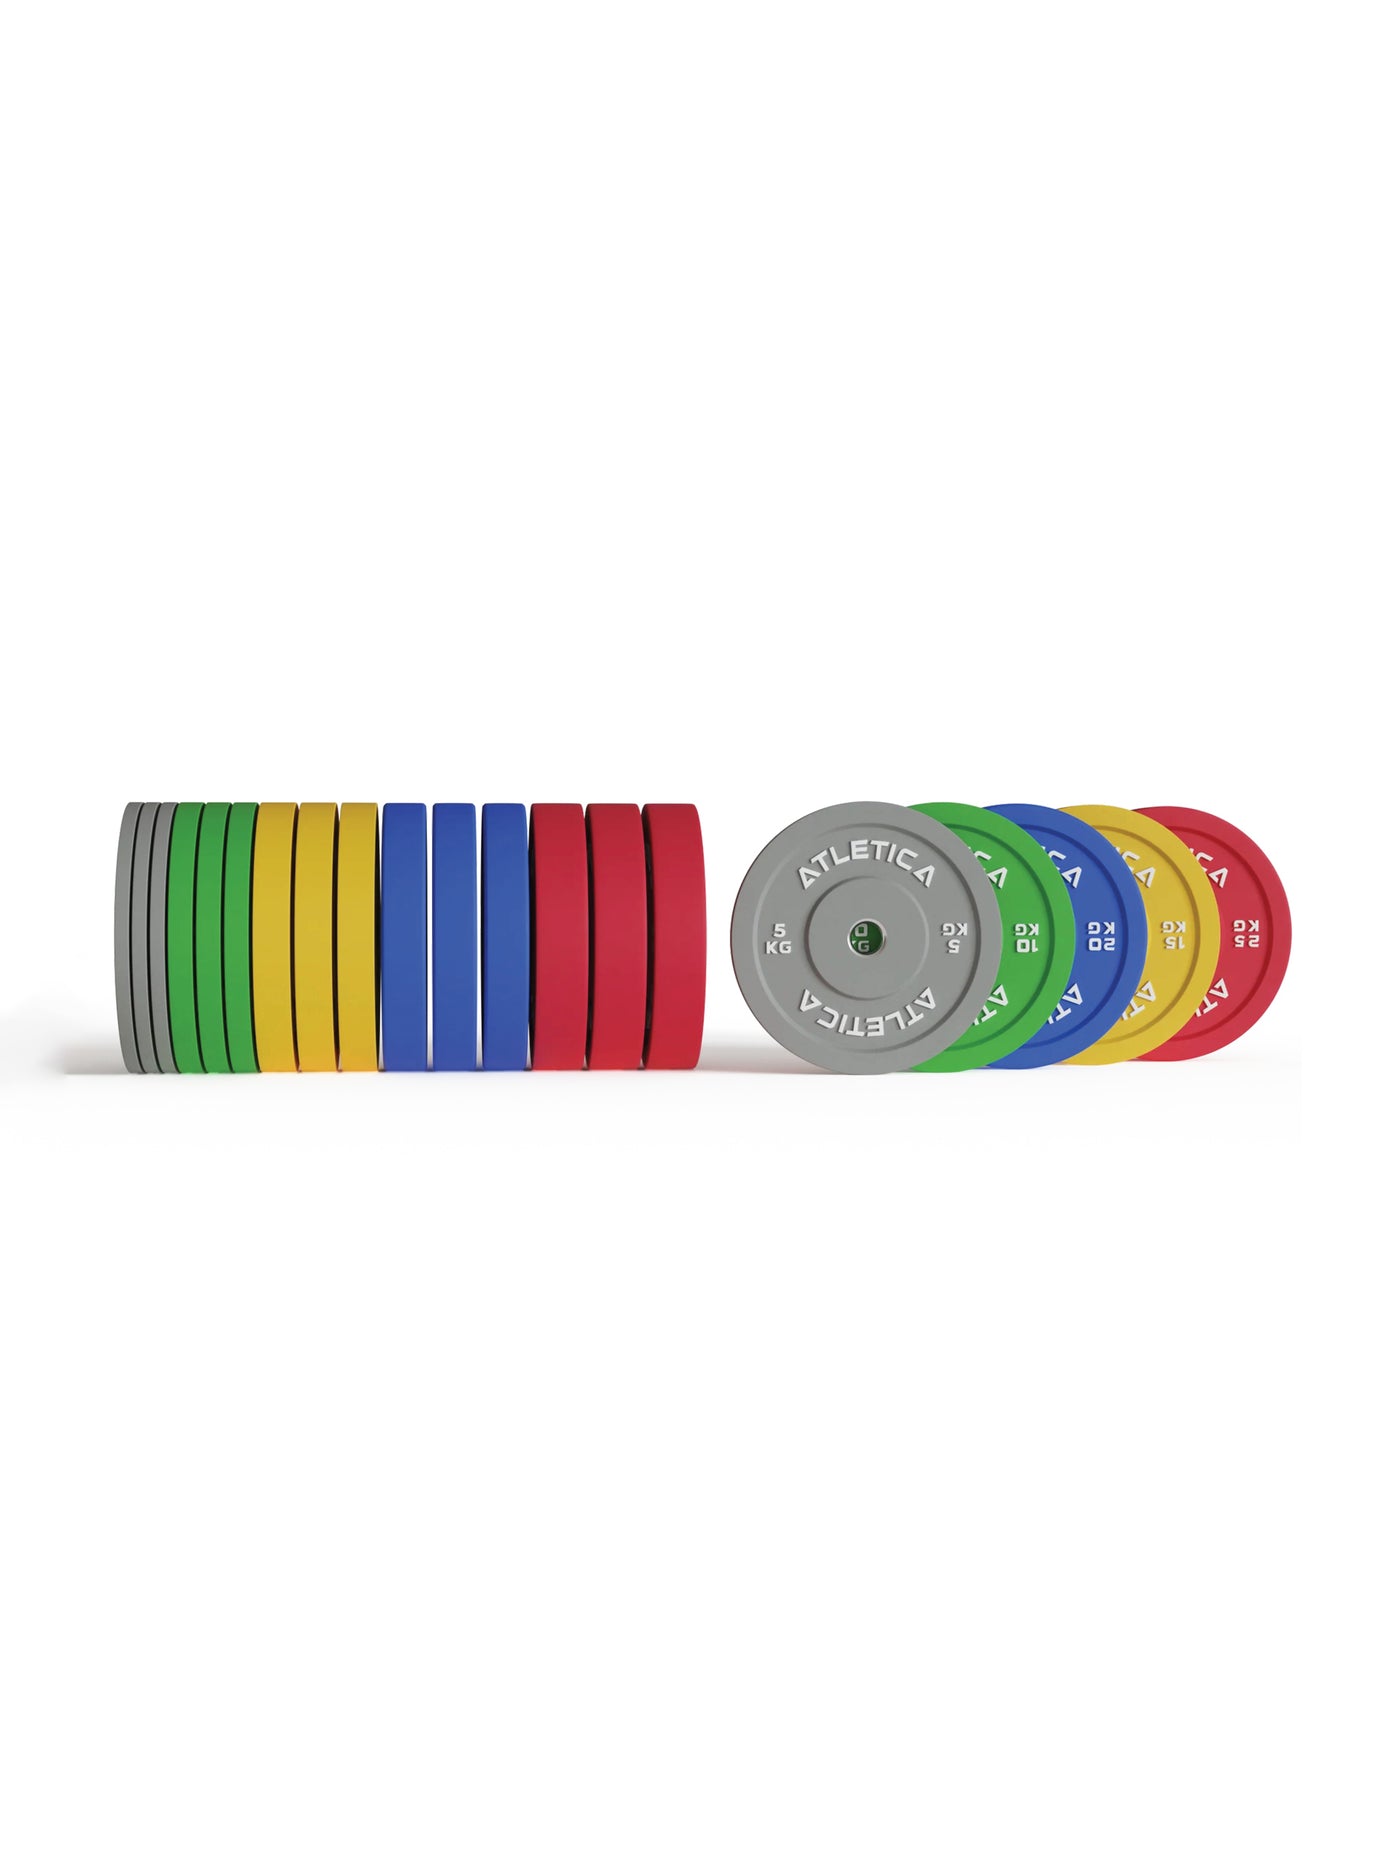 Trainingsscheiben Color Bumper Plates 300 kg bestehend aus 4x 5 kg ∣ 4x 10 kg ∣ 4x 15 kg ∣ 4x 20 kg ∣ 4x 25 kg